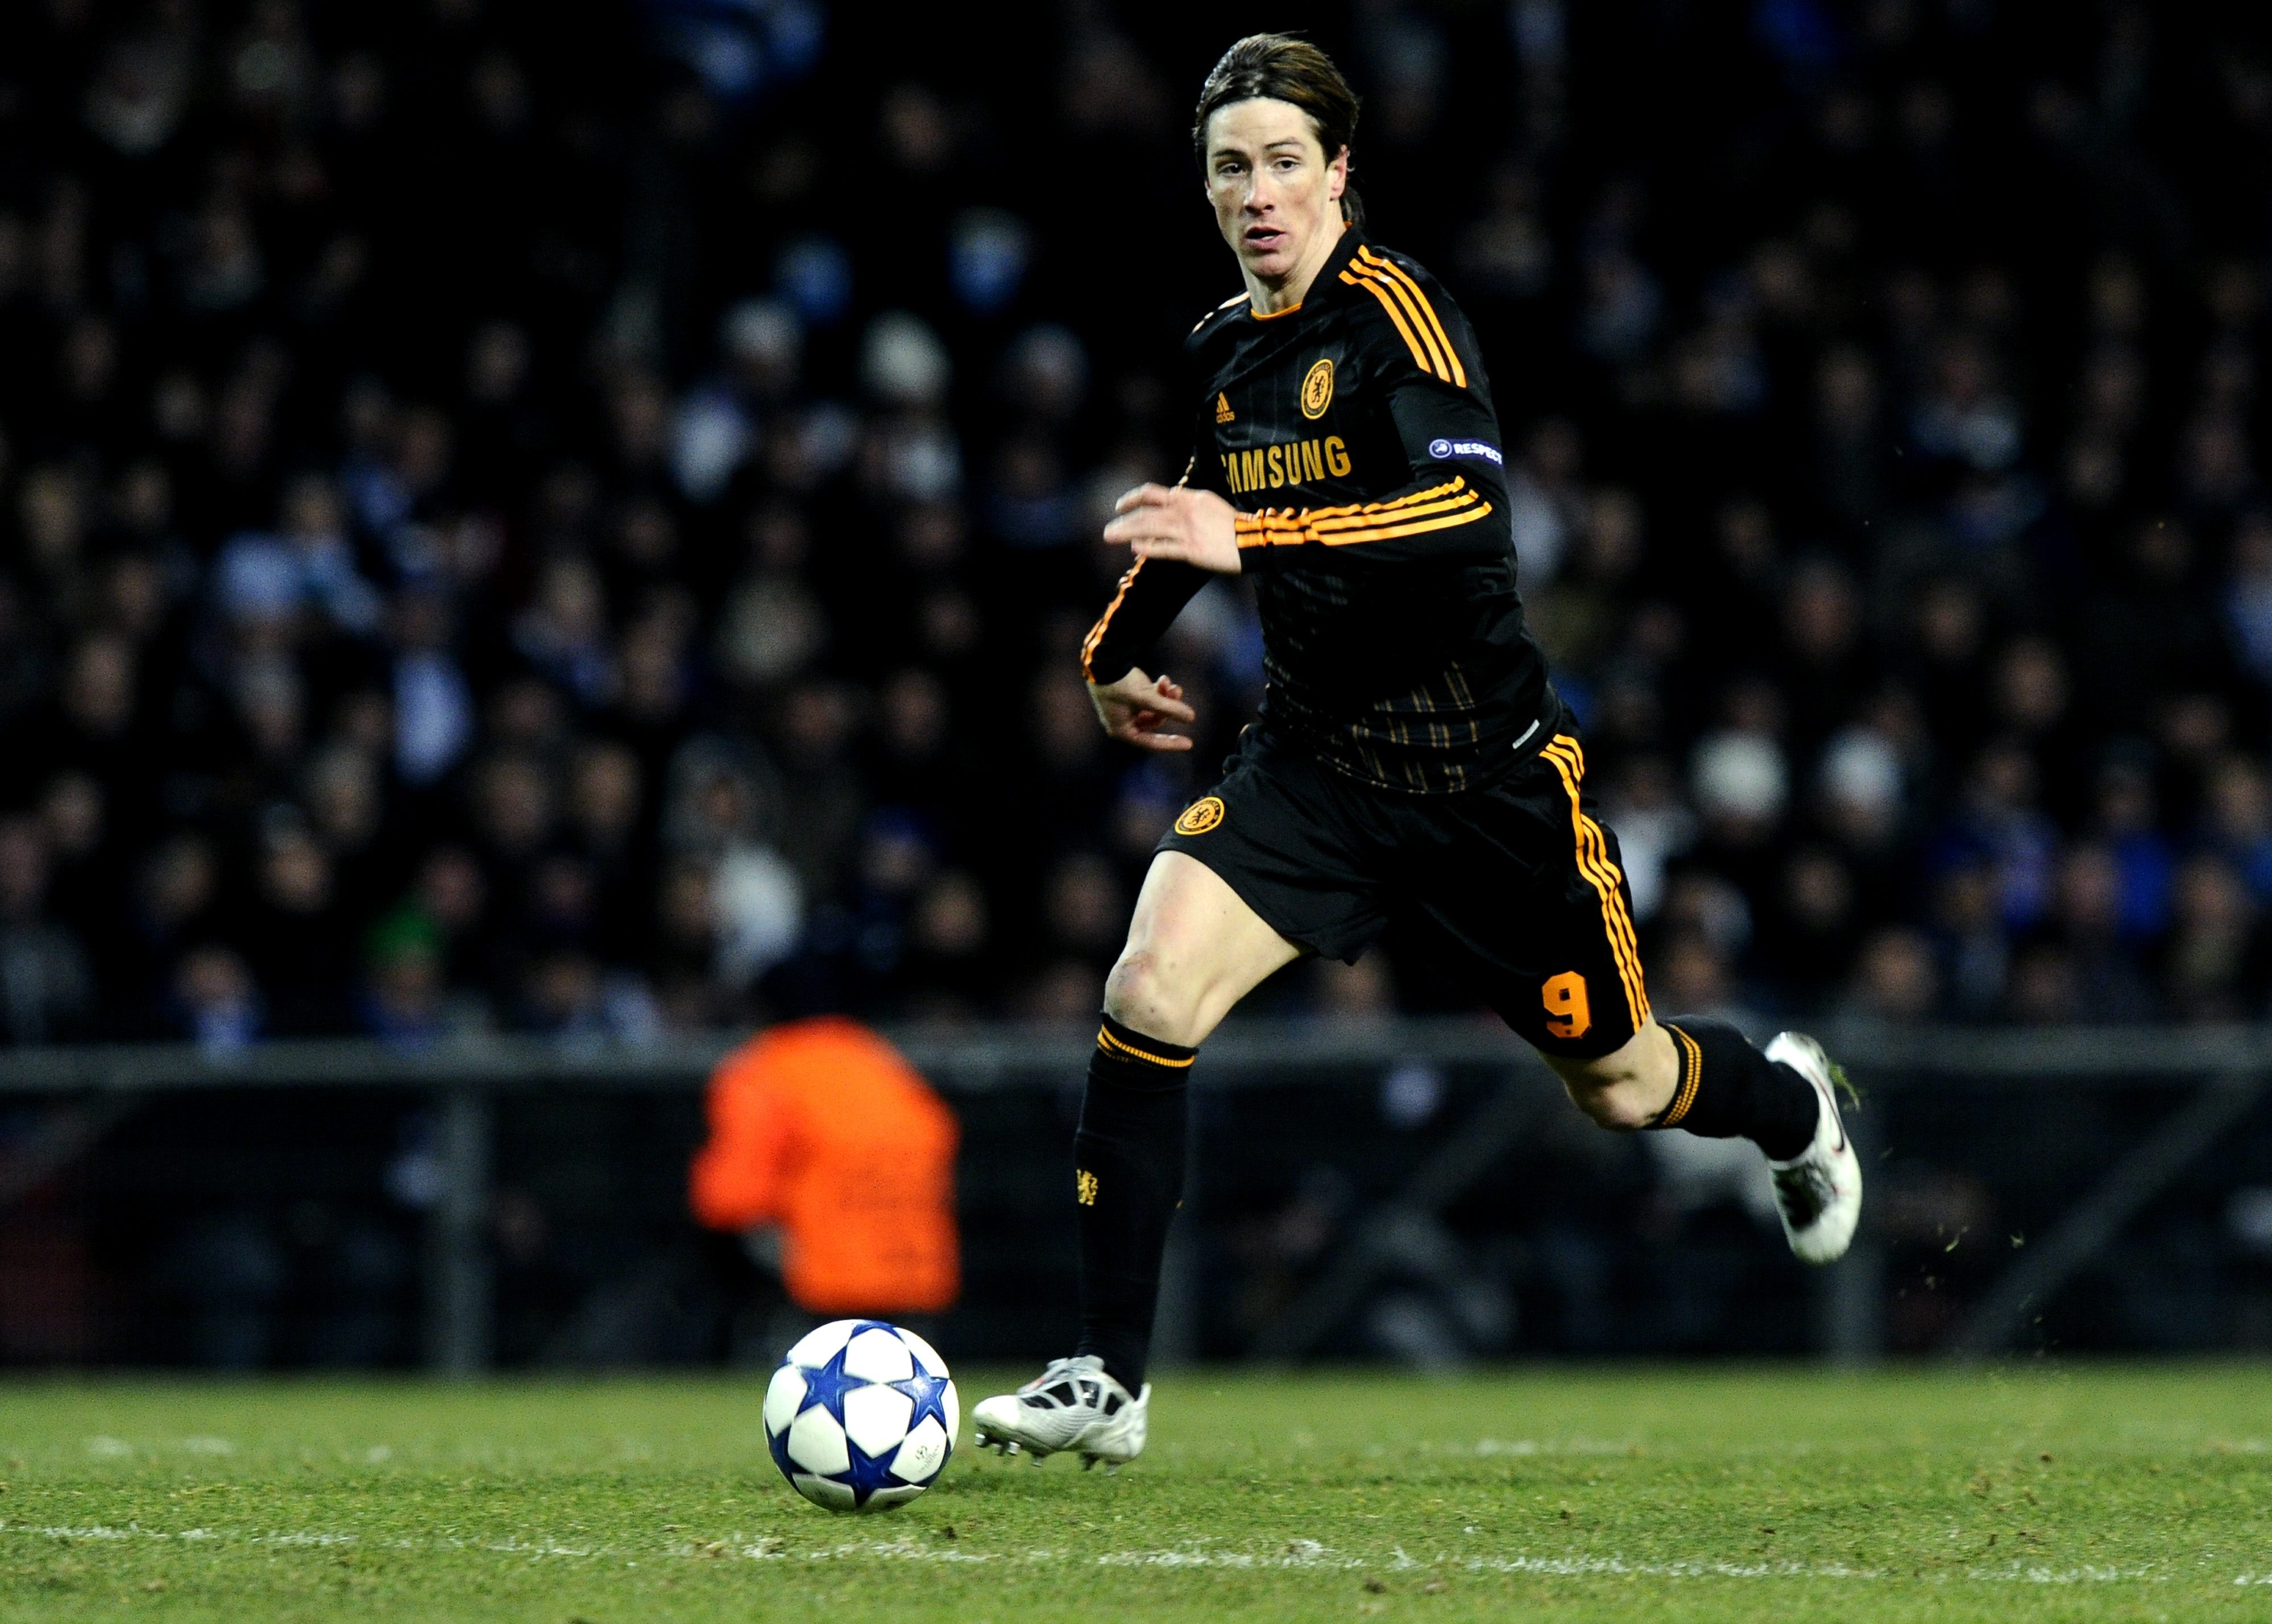 Han trivs bra i klubben och London - trots att Fernando Torres har tagit över mycket av hans speltid.